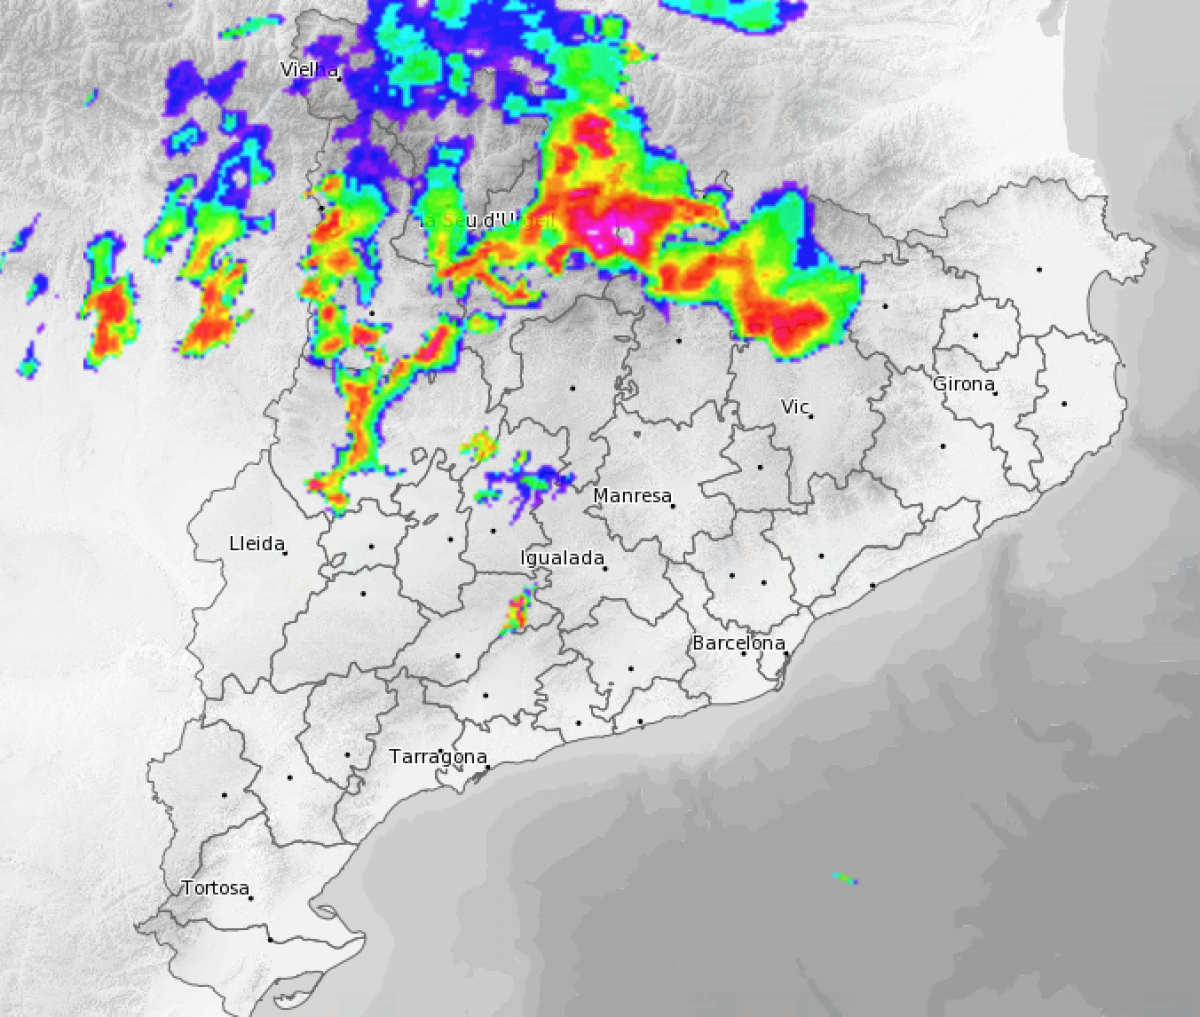 Imatge del radar meteorològic aquesta tarda amb les fortes tempestes